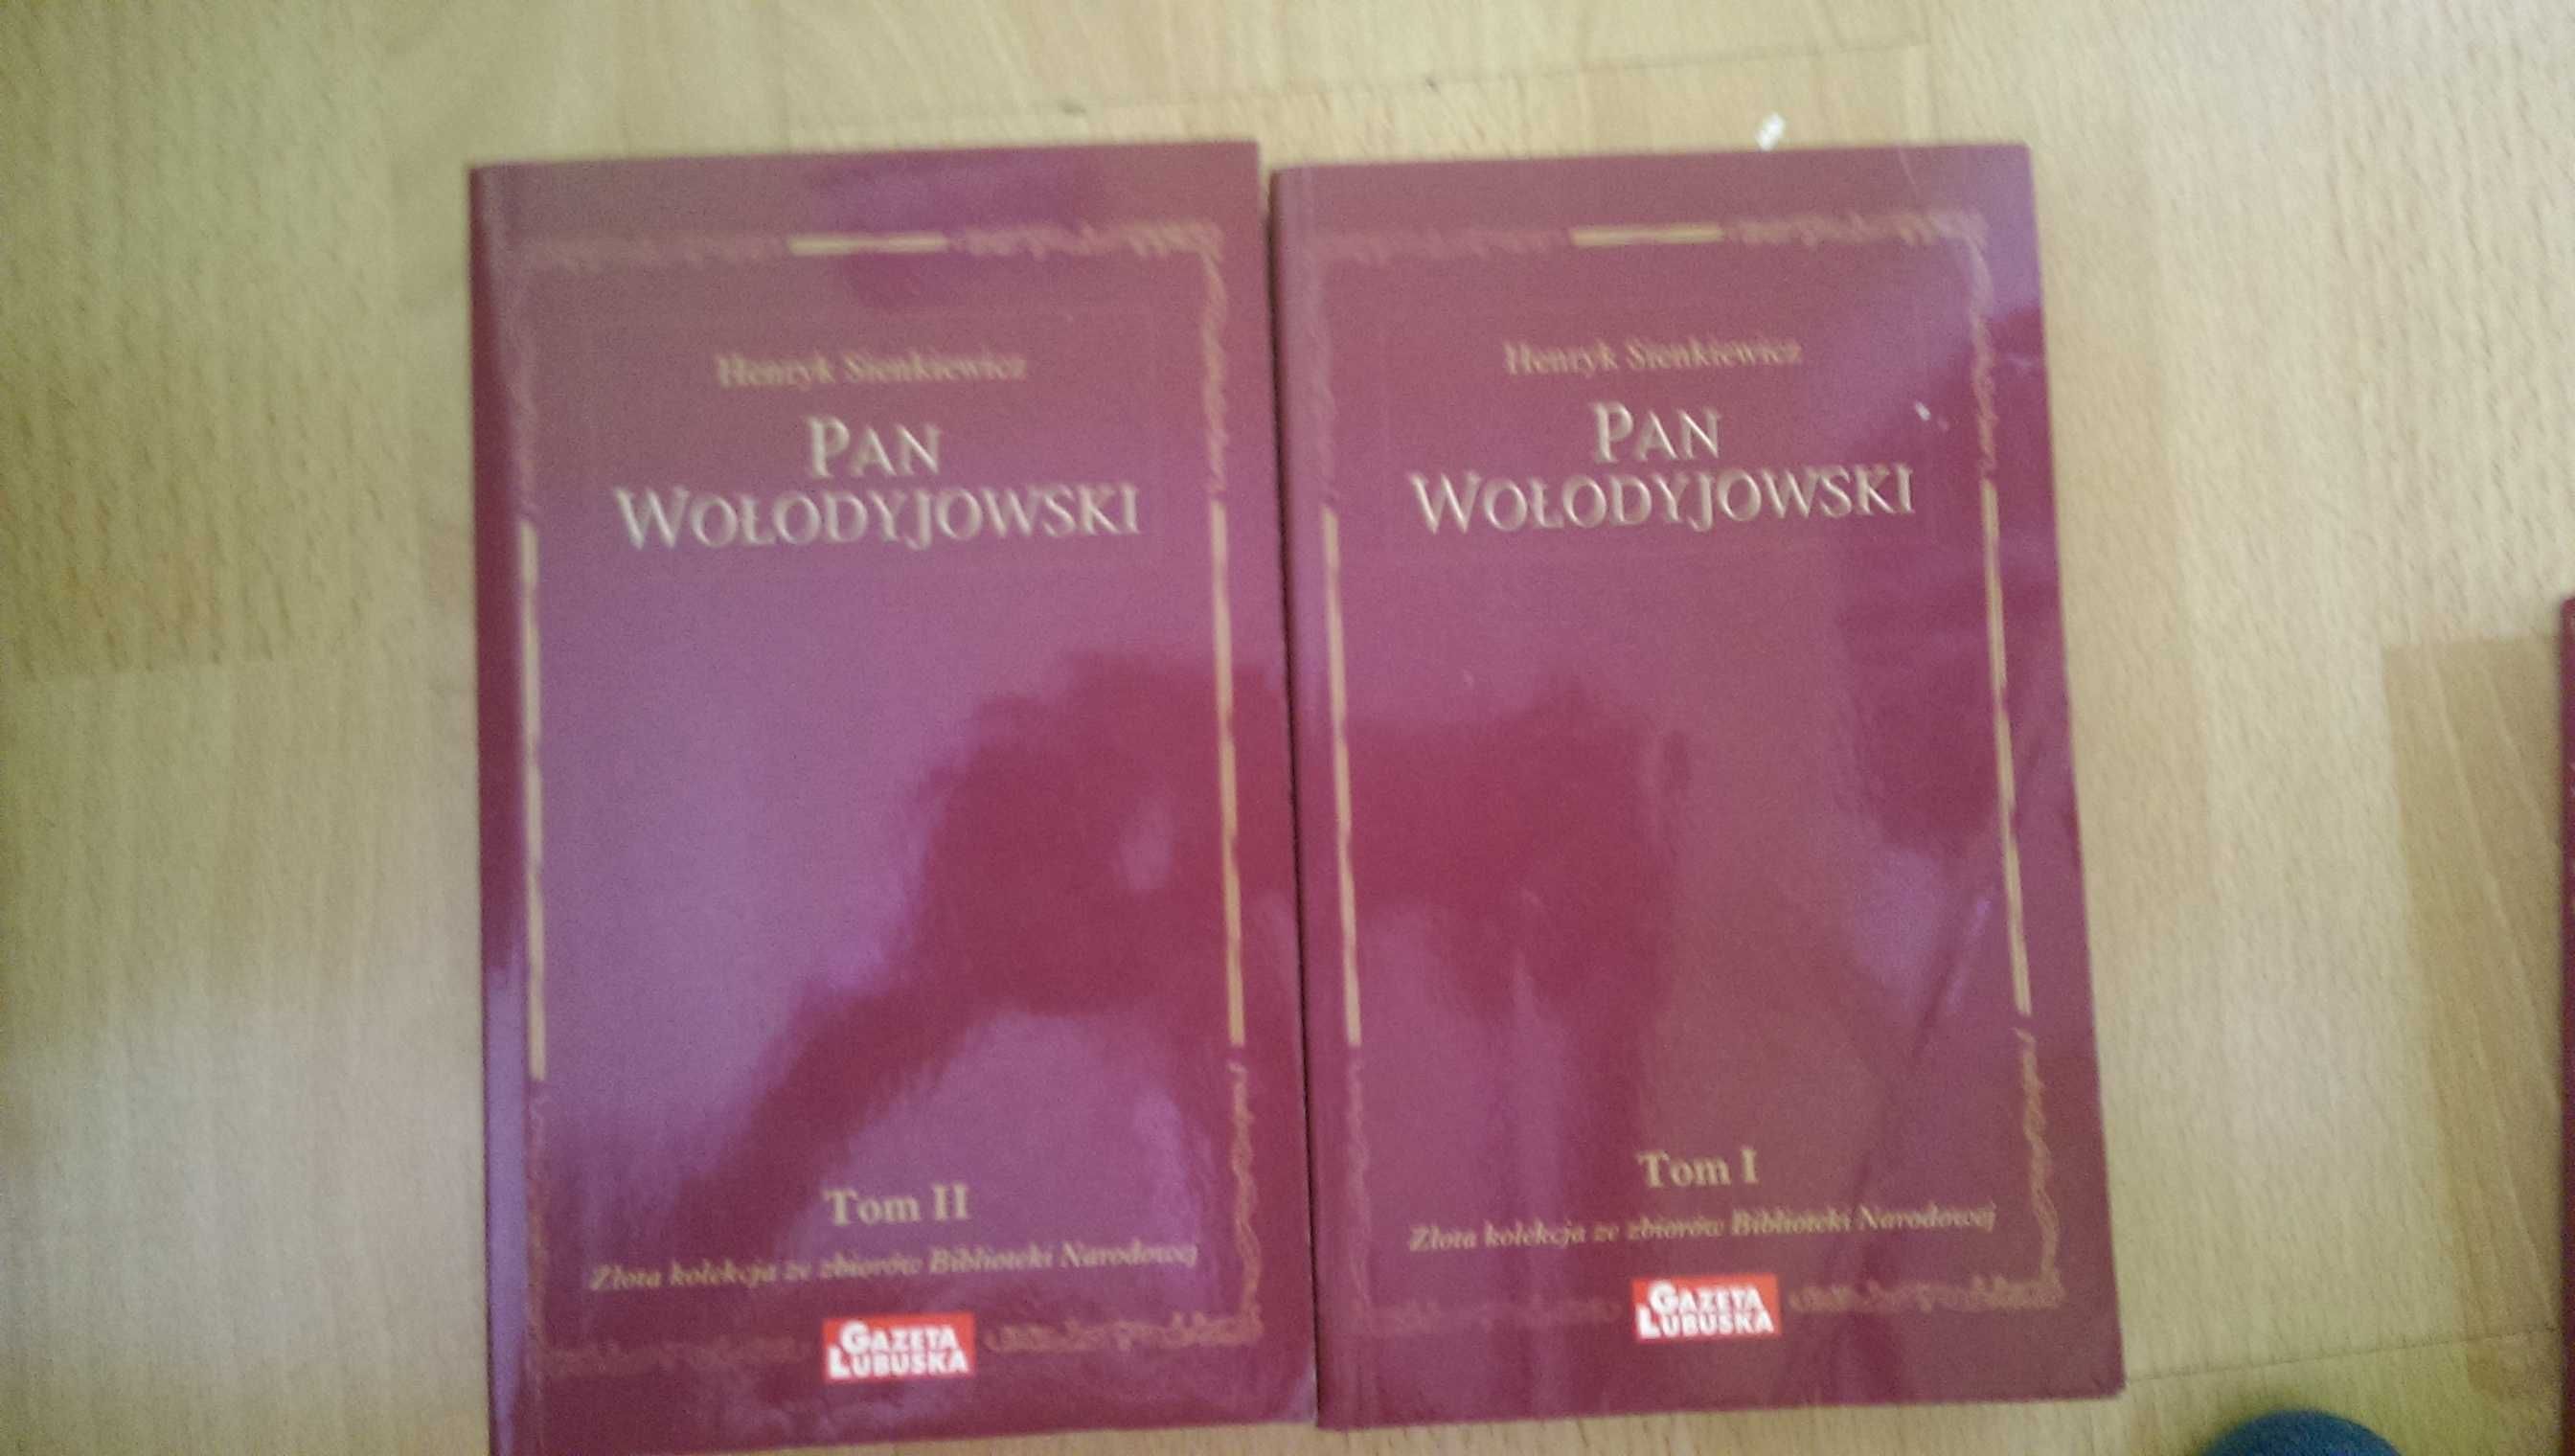 Pan Wołodyjowski Sienkiewicz